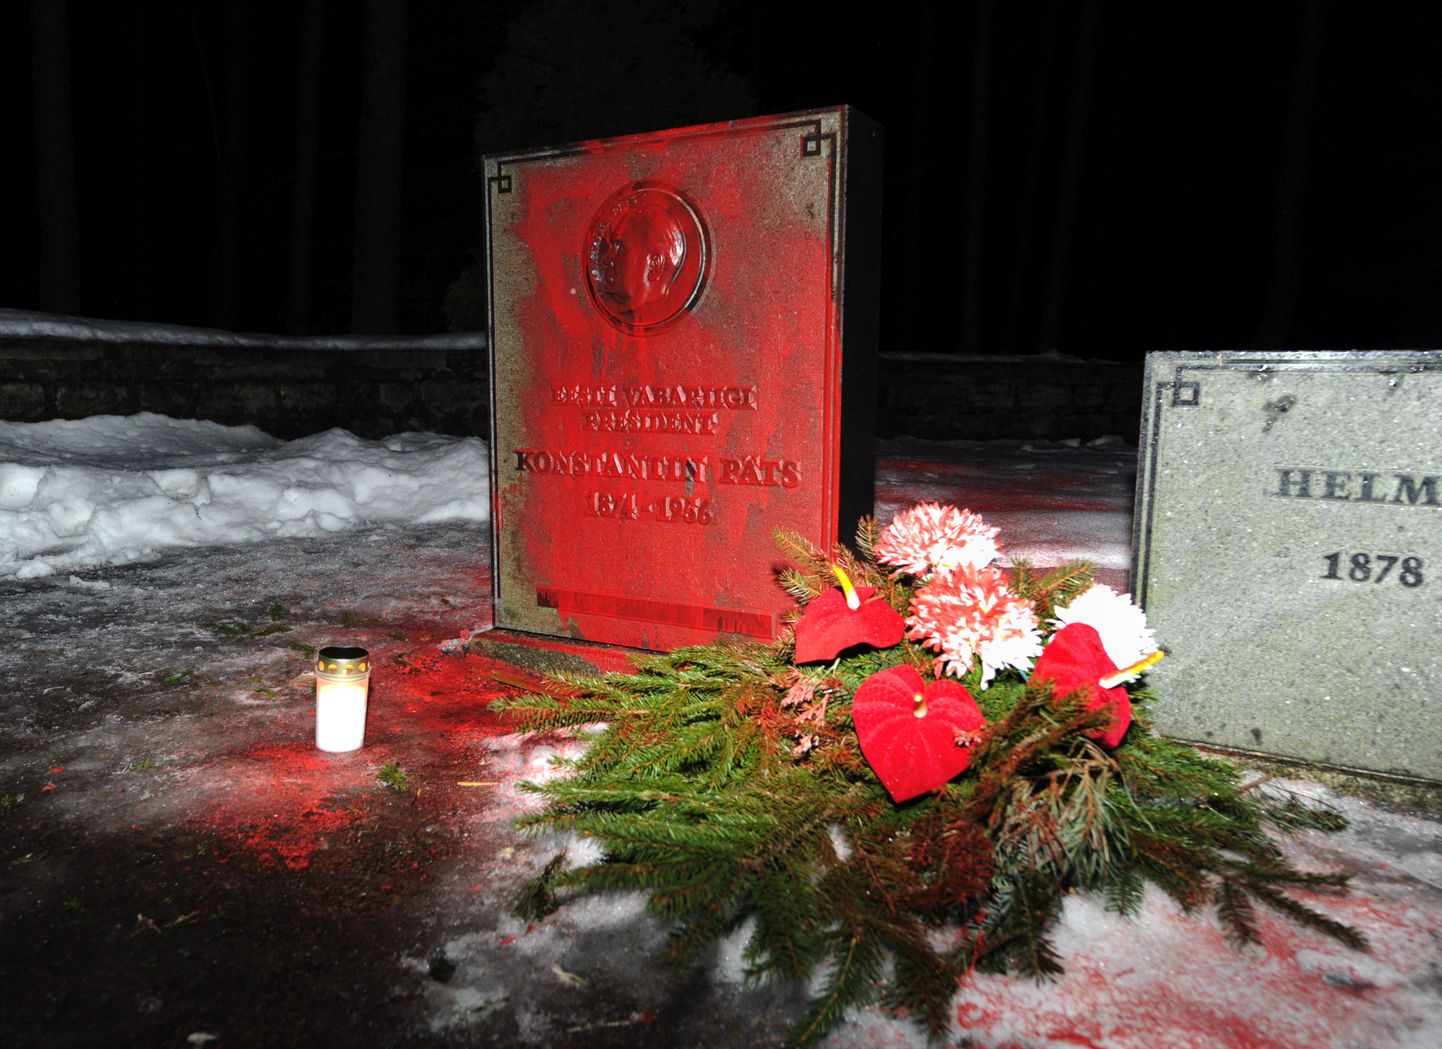 Punase värviga üle valatud president Pätsi hauatähis.